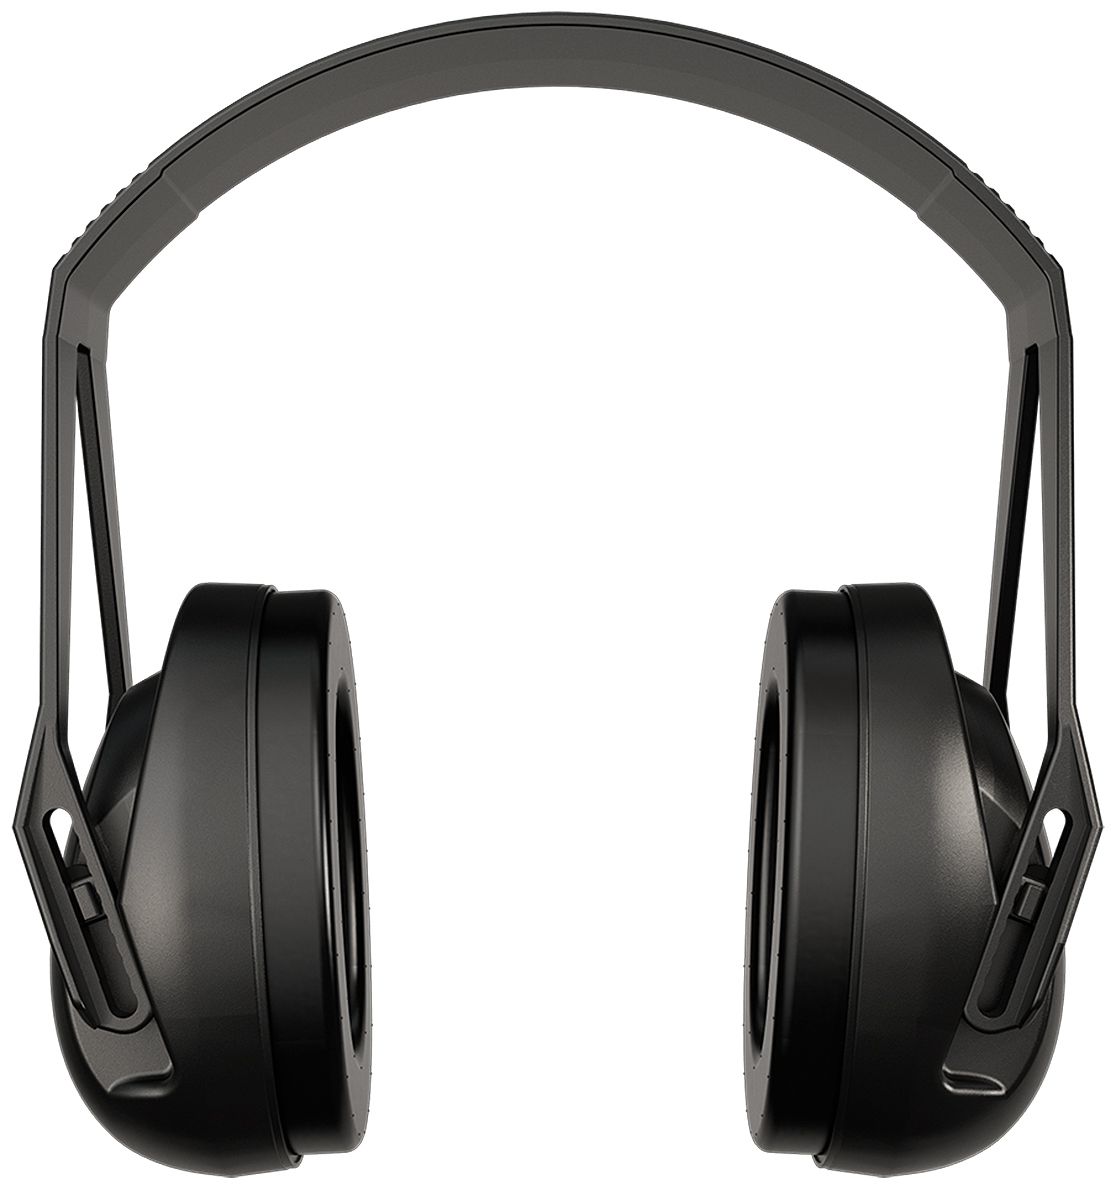 Sordin Classic XLS Kapsel-Gehörschutz - Ohrenschützer mit 25 dB SNR (niedrig) - passiver Gehörschützer für die Arbeit